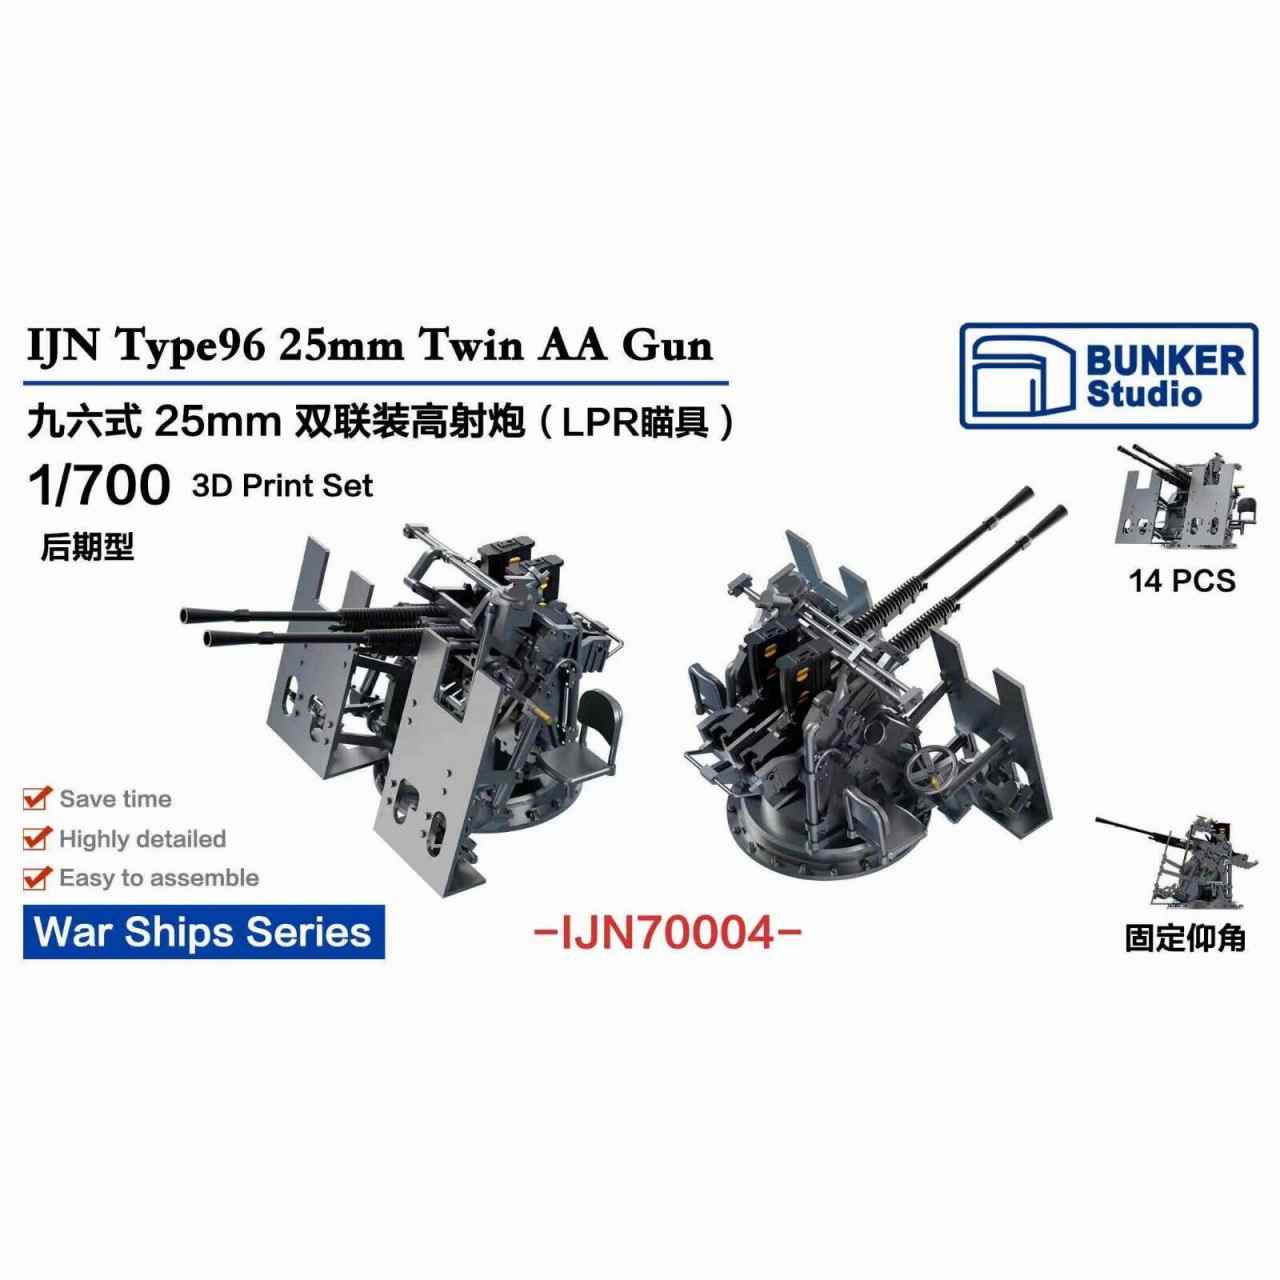 【新製品】IJN70004 日本海軍 九六式25mm連装機銃 LPR照準器 (後期型)w/防盾